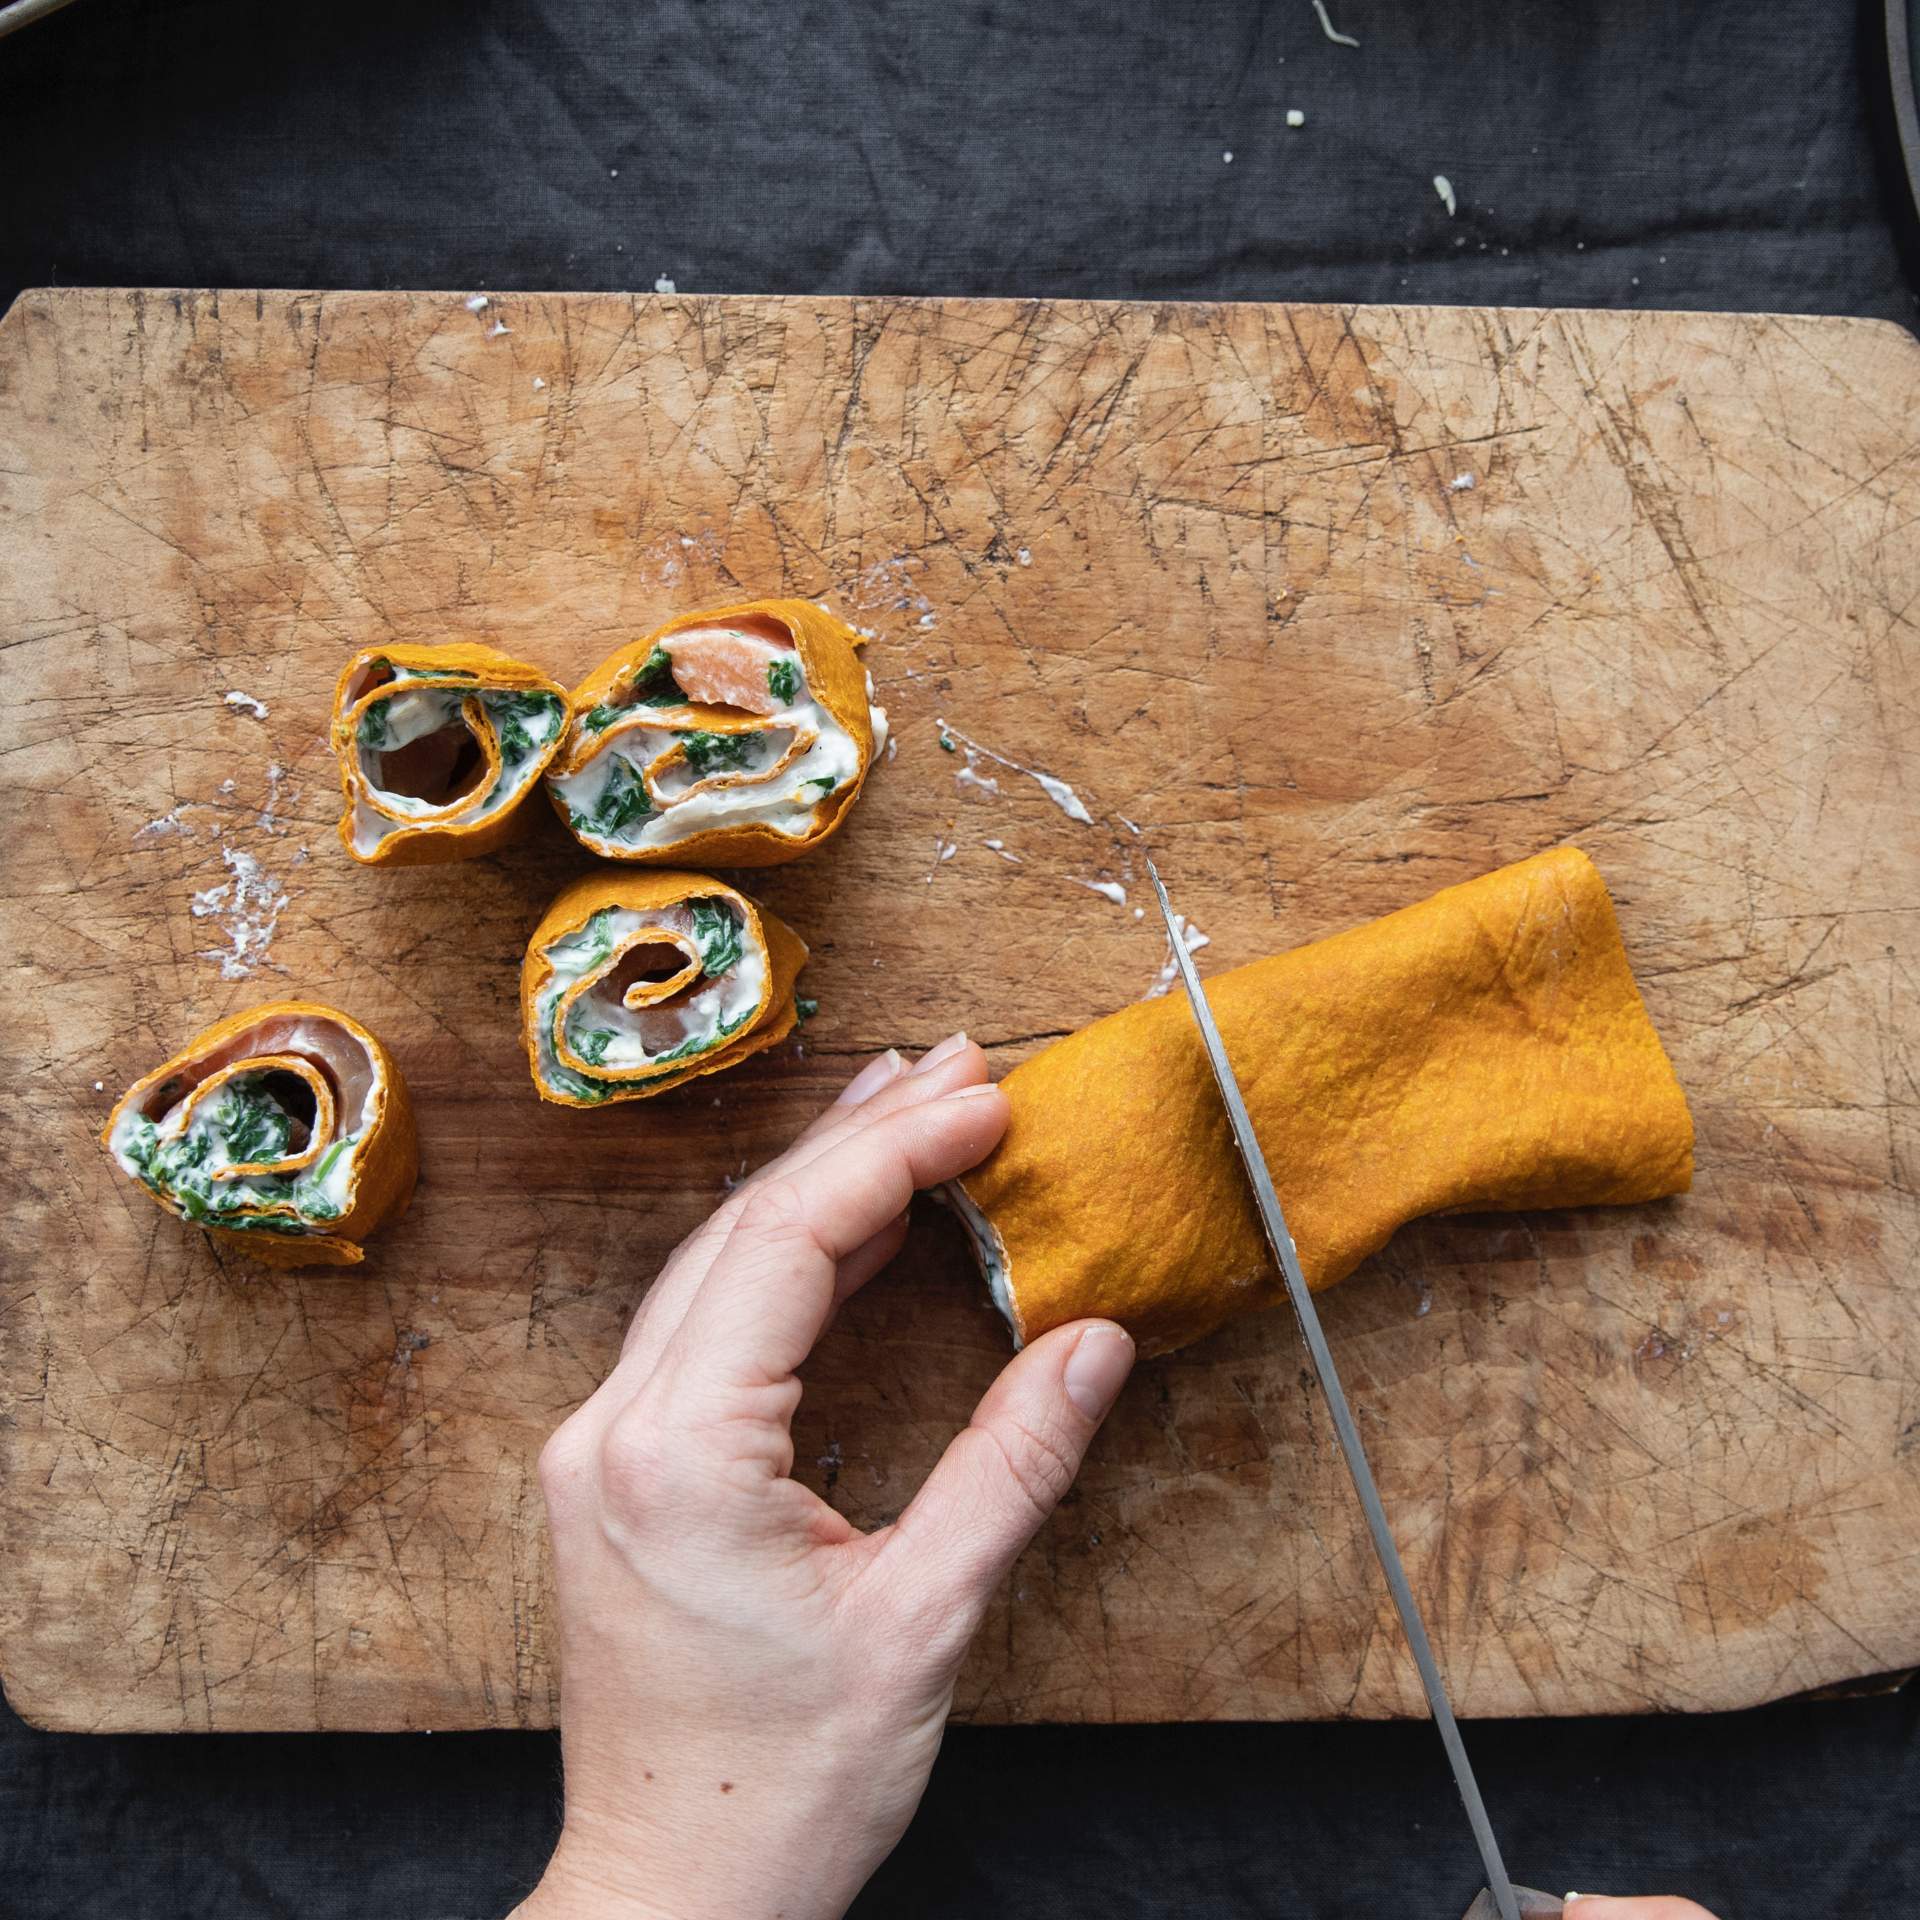 Gerollte Karotten Tortilla Wraps gefüllt mit Lachs, Spinat und Ziegenkäse wird in Stücke geschnitten